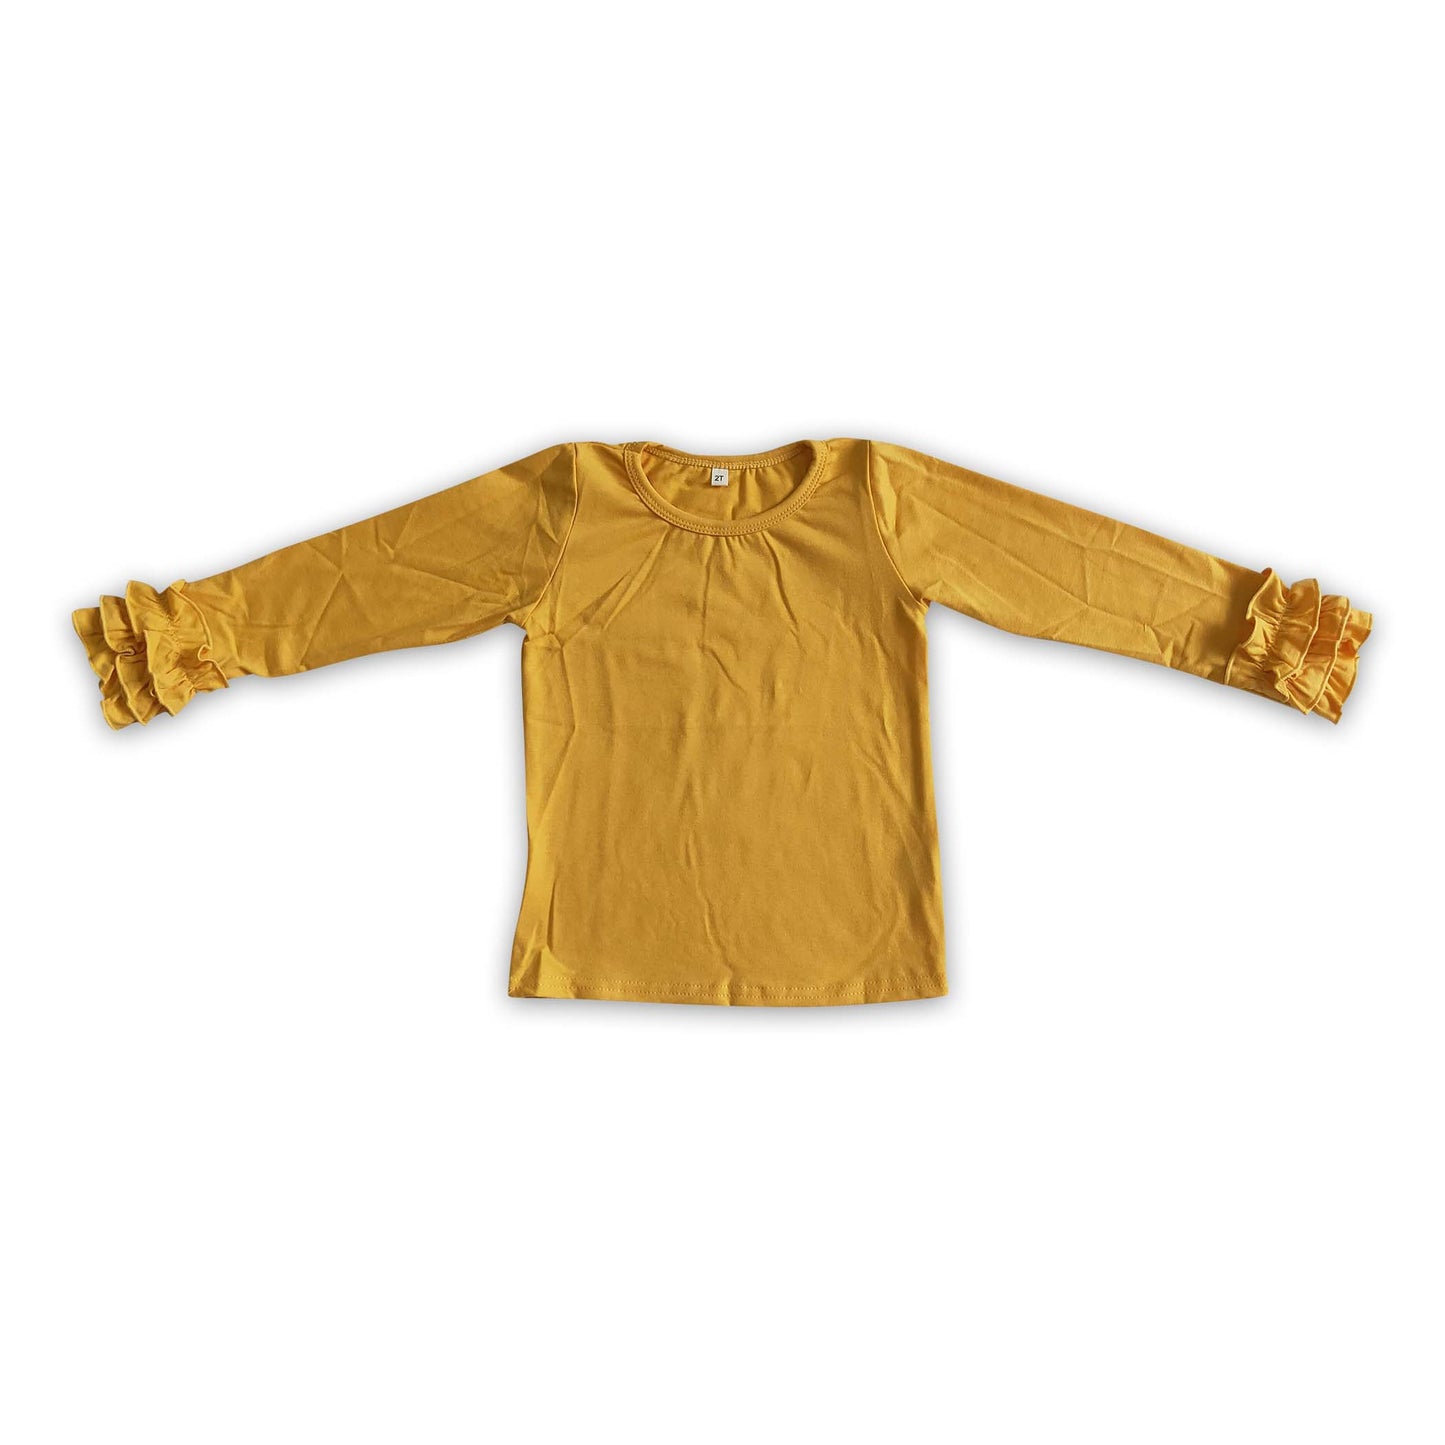 Mustard cotton shirt sunflower deninm overalls girls fall outfits